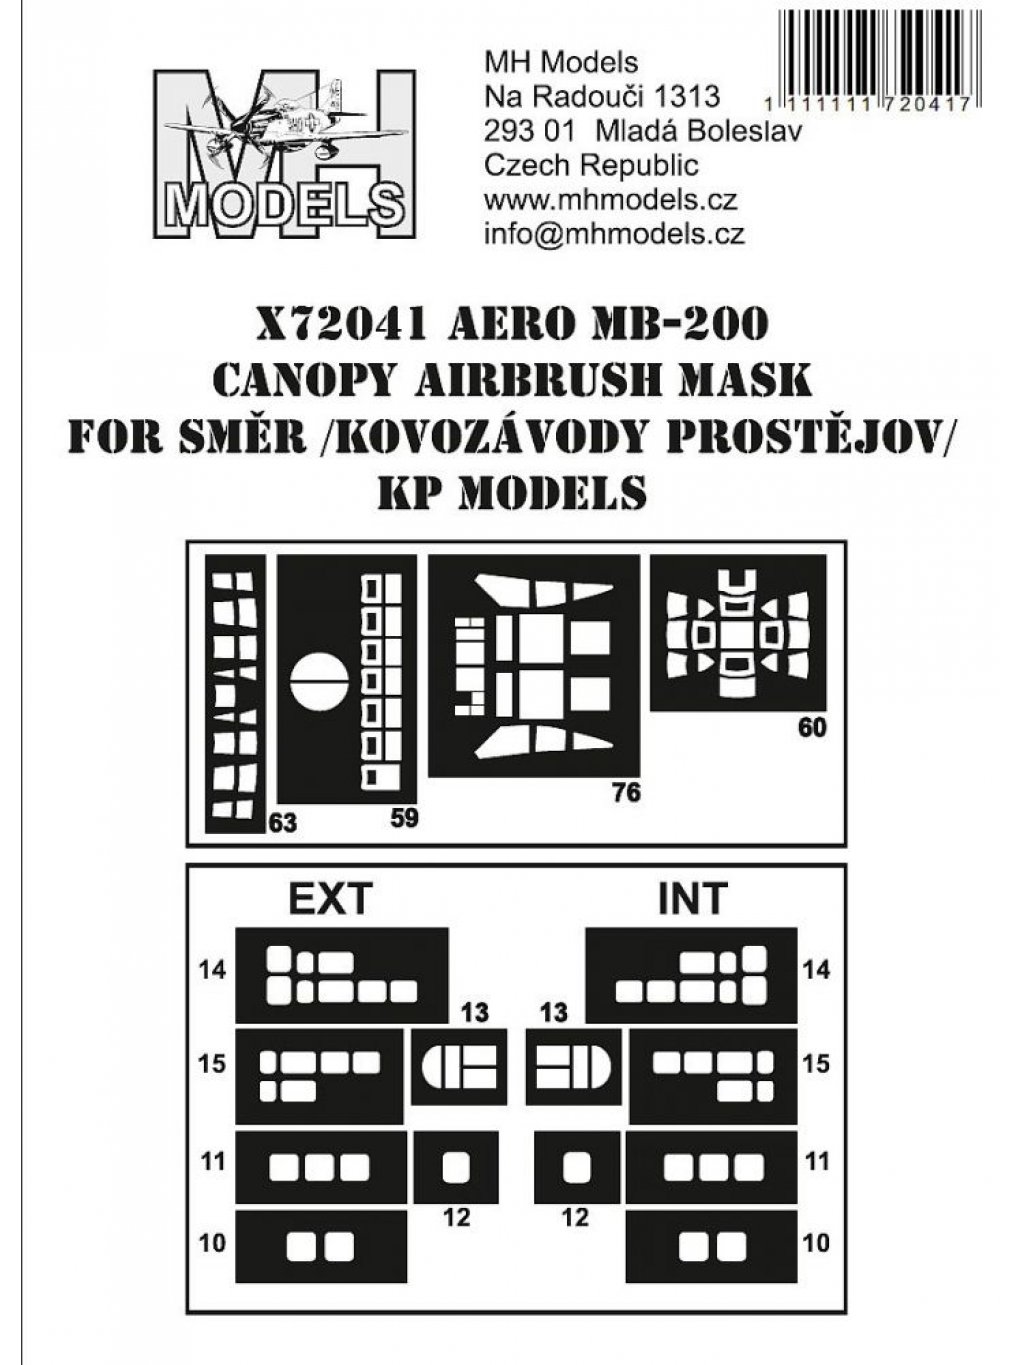 Aero MB-200 canopy airbrush mask for Směr /Kovozávody Prostějov / KP Models